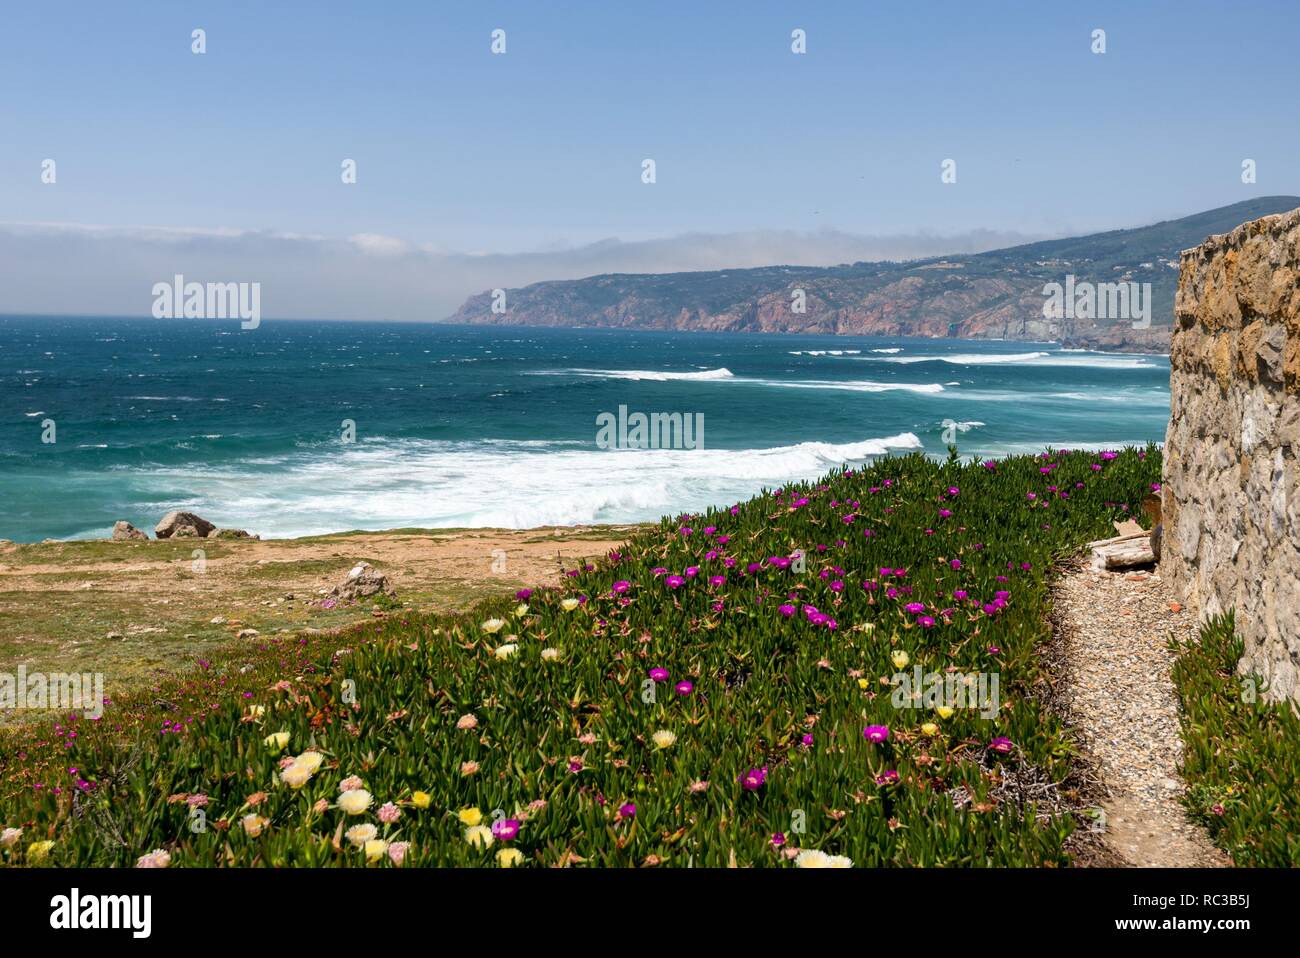 La spiaggia di Praia do Guincho è popolare per il surf, windsurf e kitesurf. Guincho, Parc naturel de Sintra-Cascais, Portogallo Foto Stock